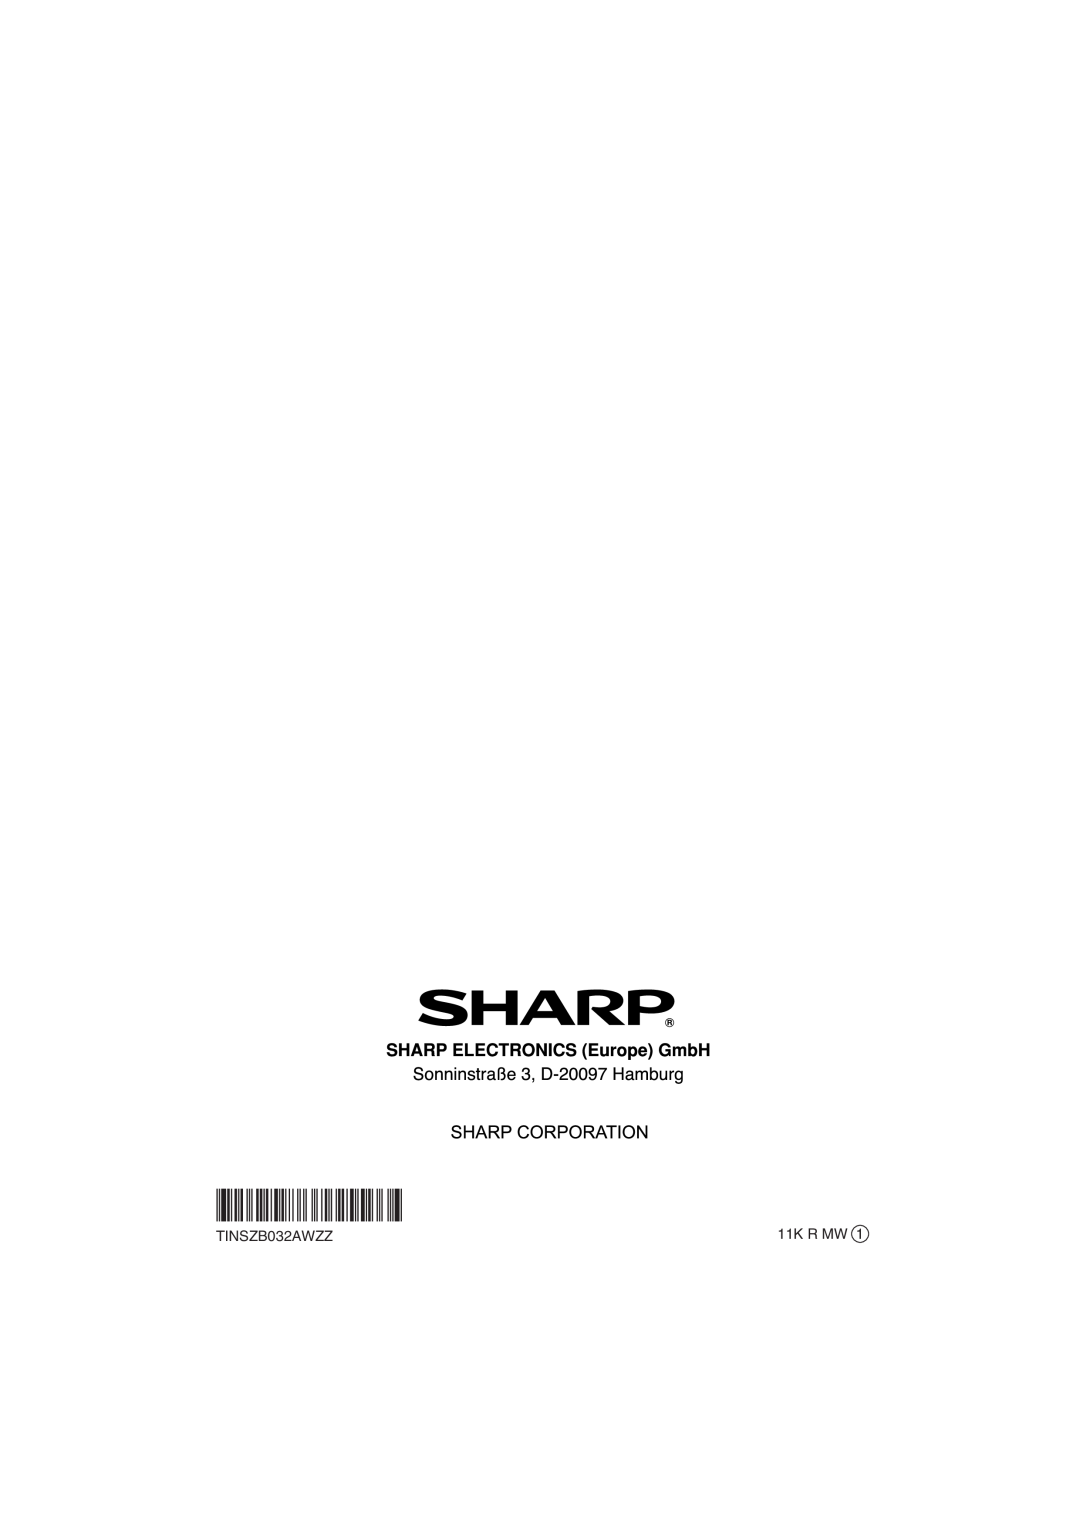 Sharp HT-SL75, HT-SL70 operation manual TINSZB032AWZZ, 11K R MW 